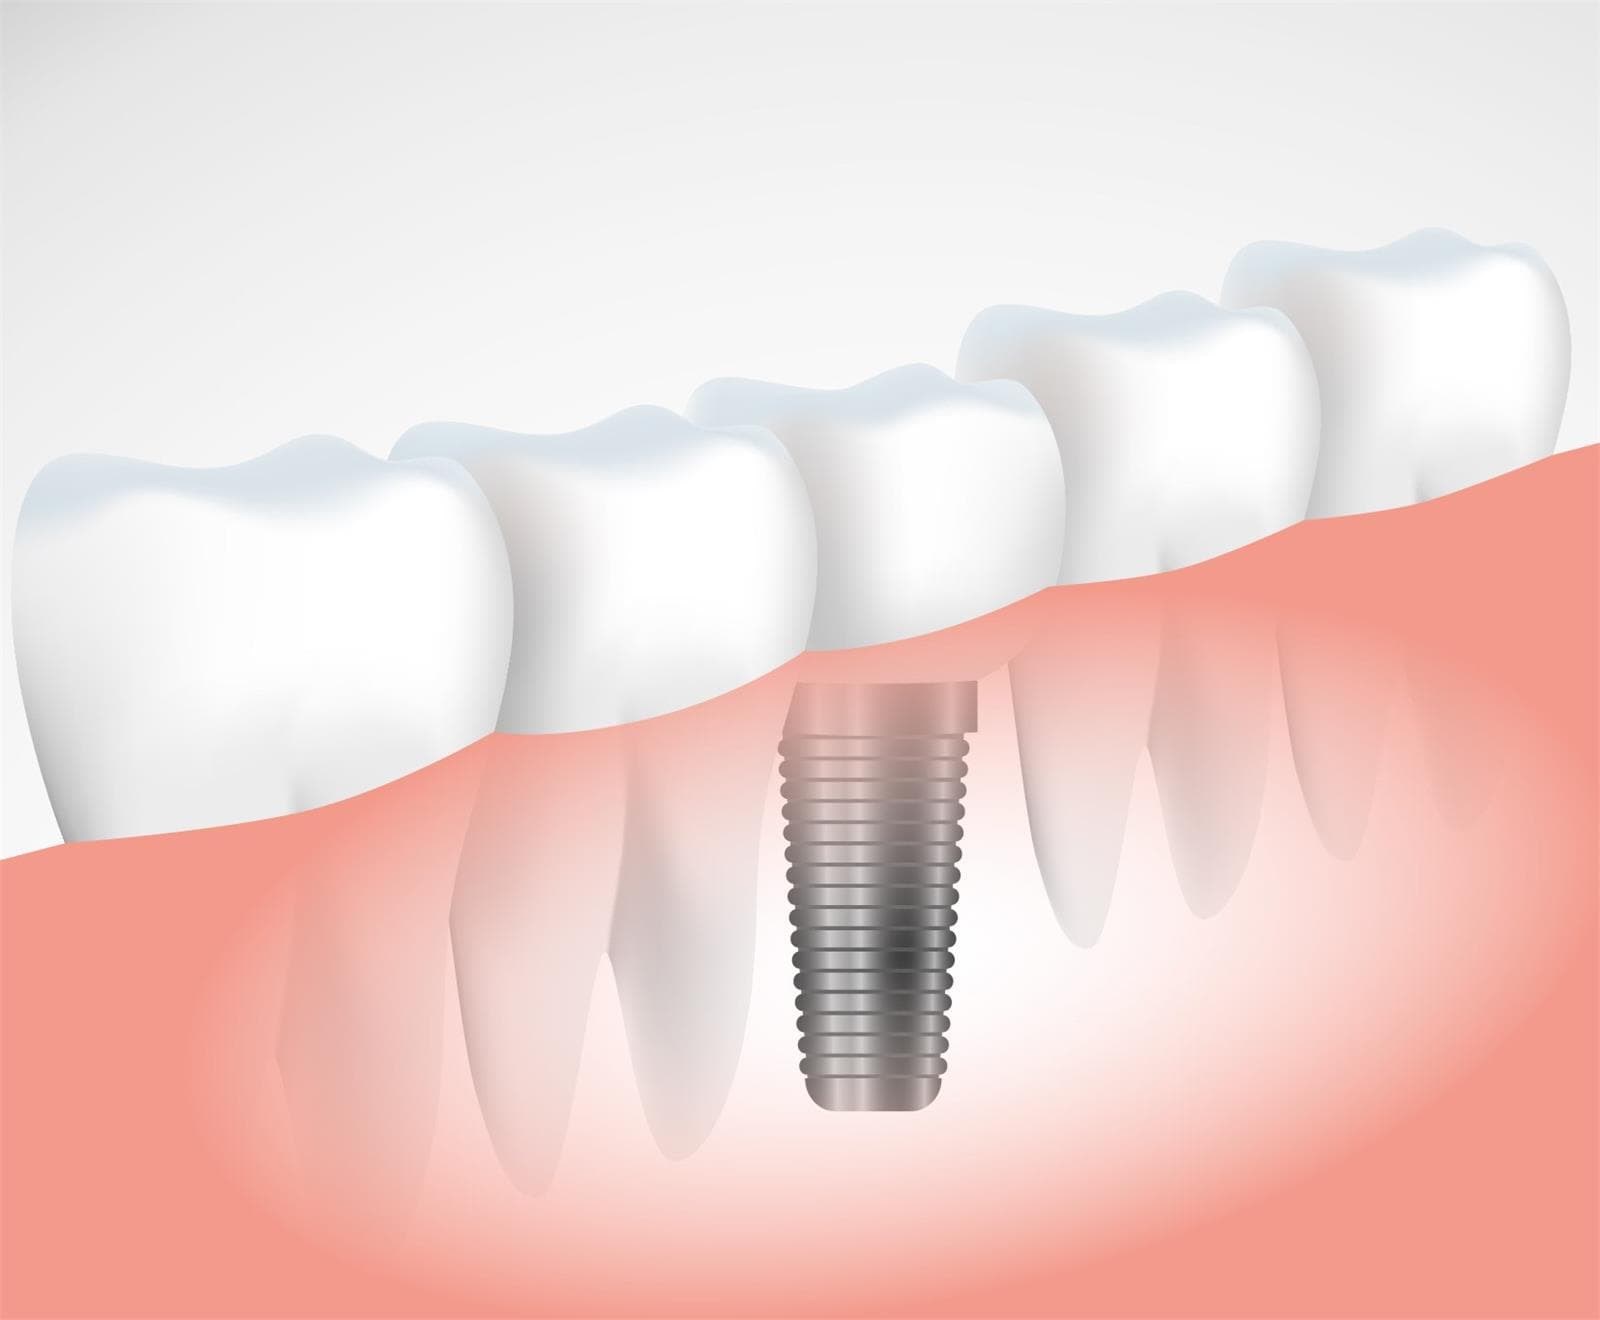 ¿Qué diferencias existen entre los implantes y las prótesis dentales? - Imagen 2